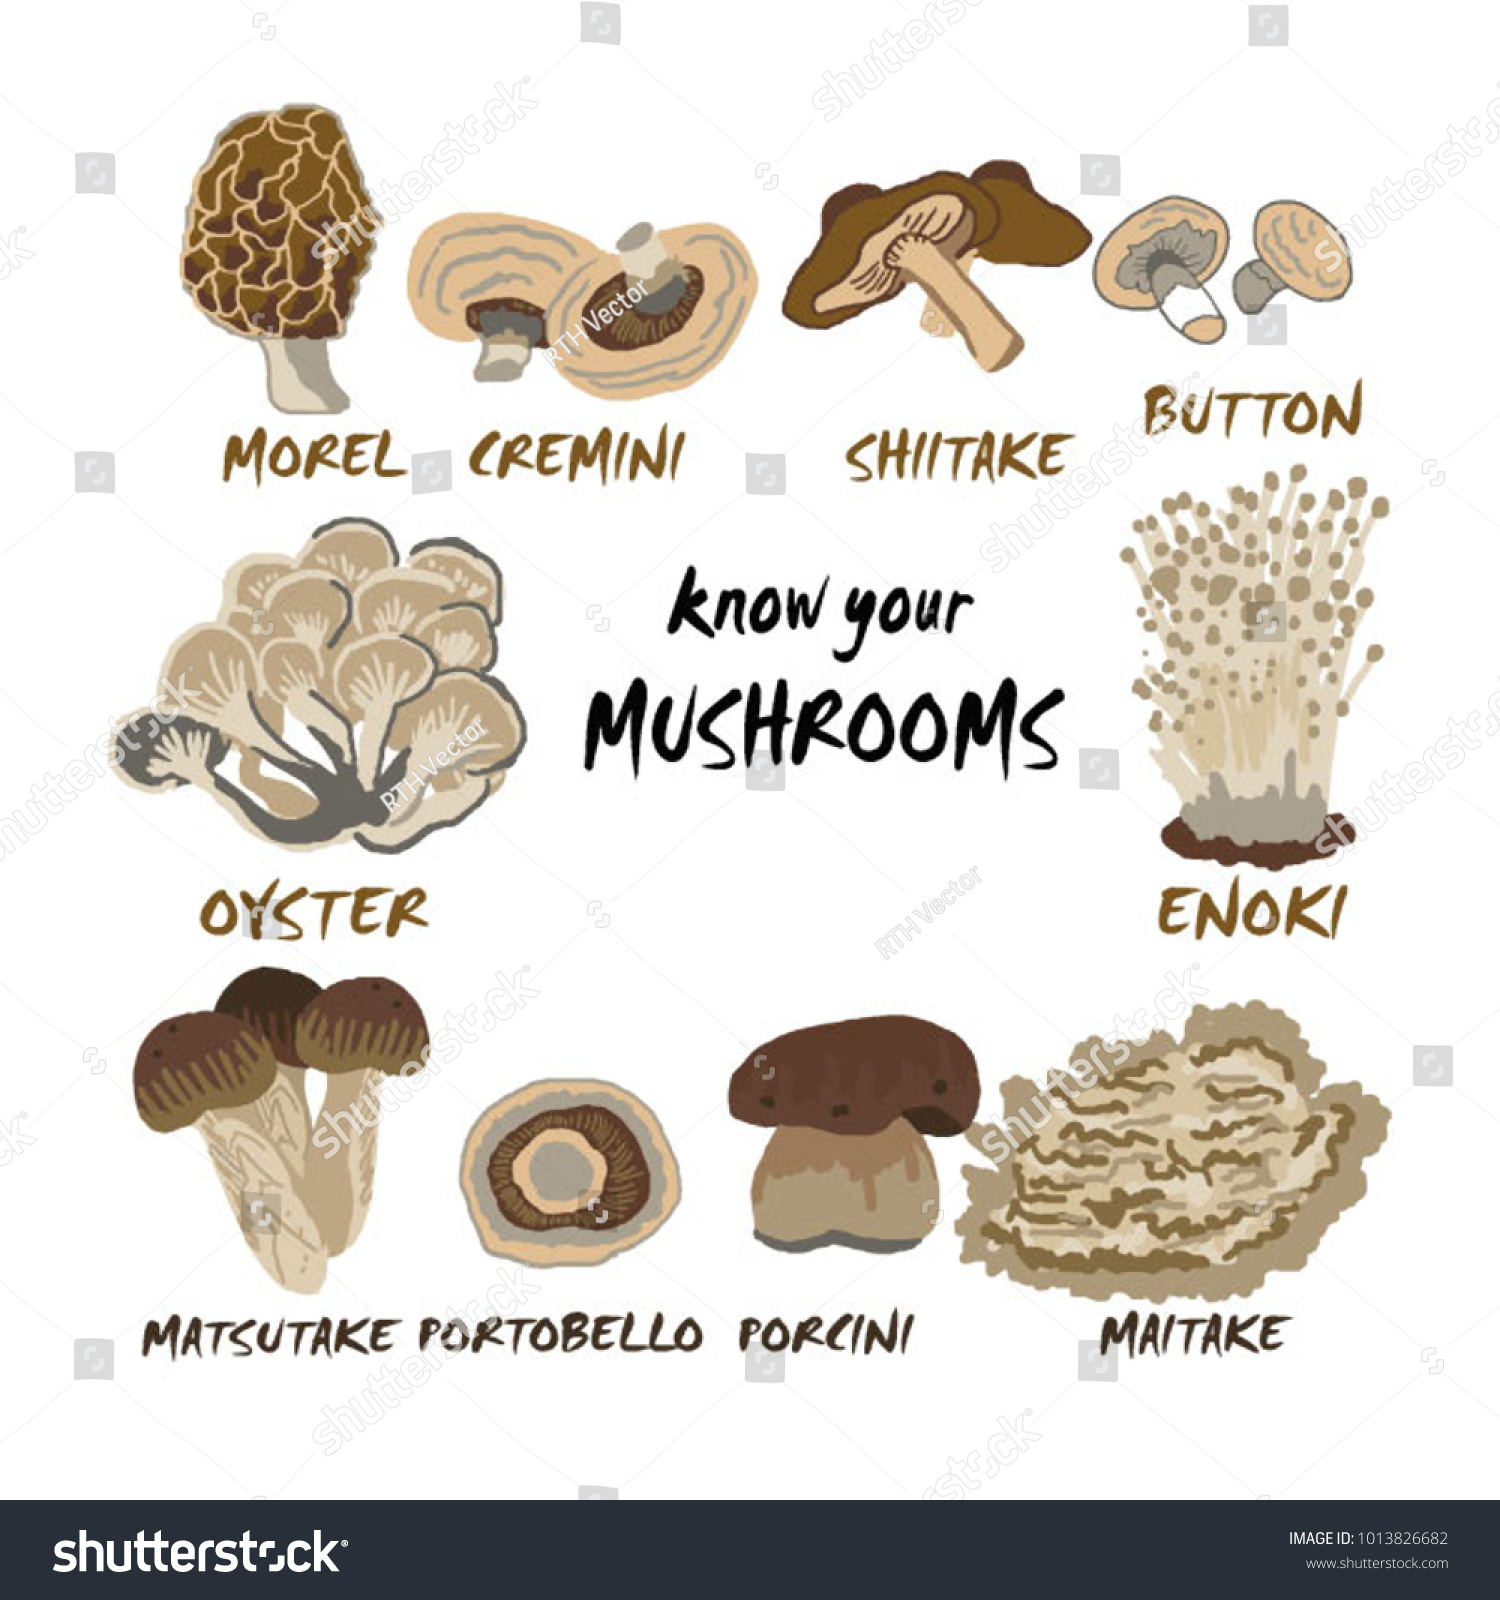 What Kind Of Mushrooms - All Mushroom Info